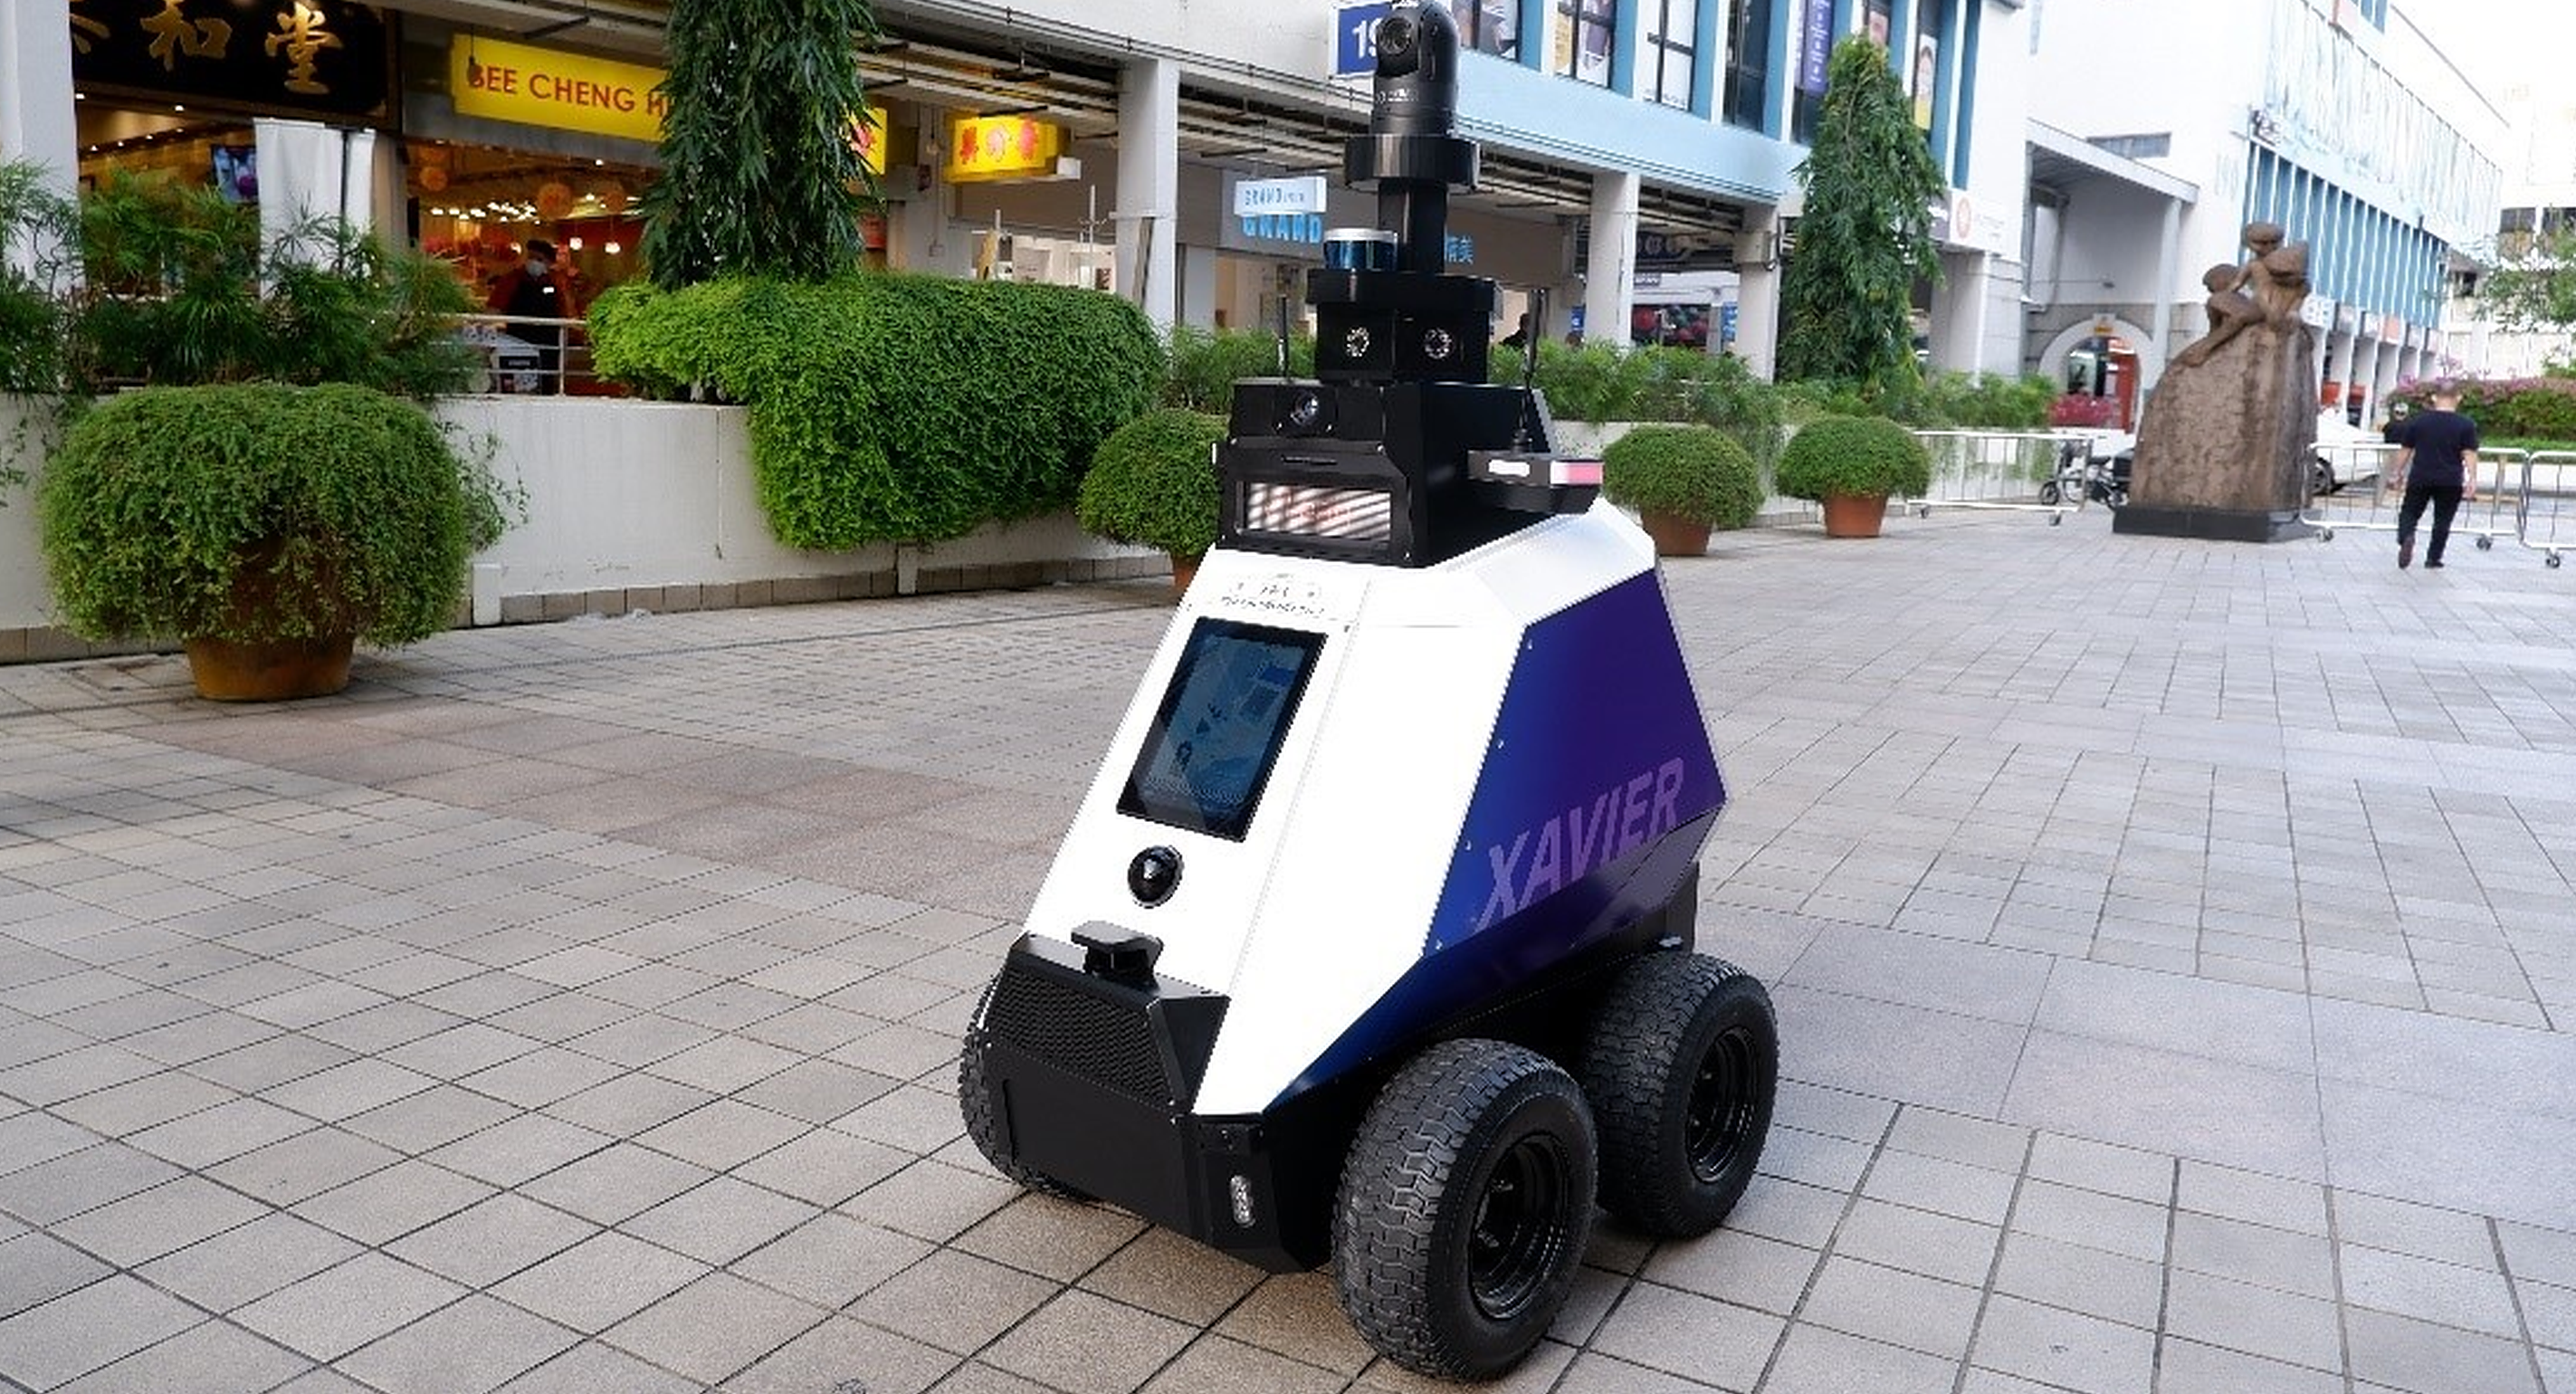 Singapore| Roboții de monitorizare care patrulează pe străzi limitează „dreptul la viața privată”. Cetățenii sunt urmăriți la orice pas